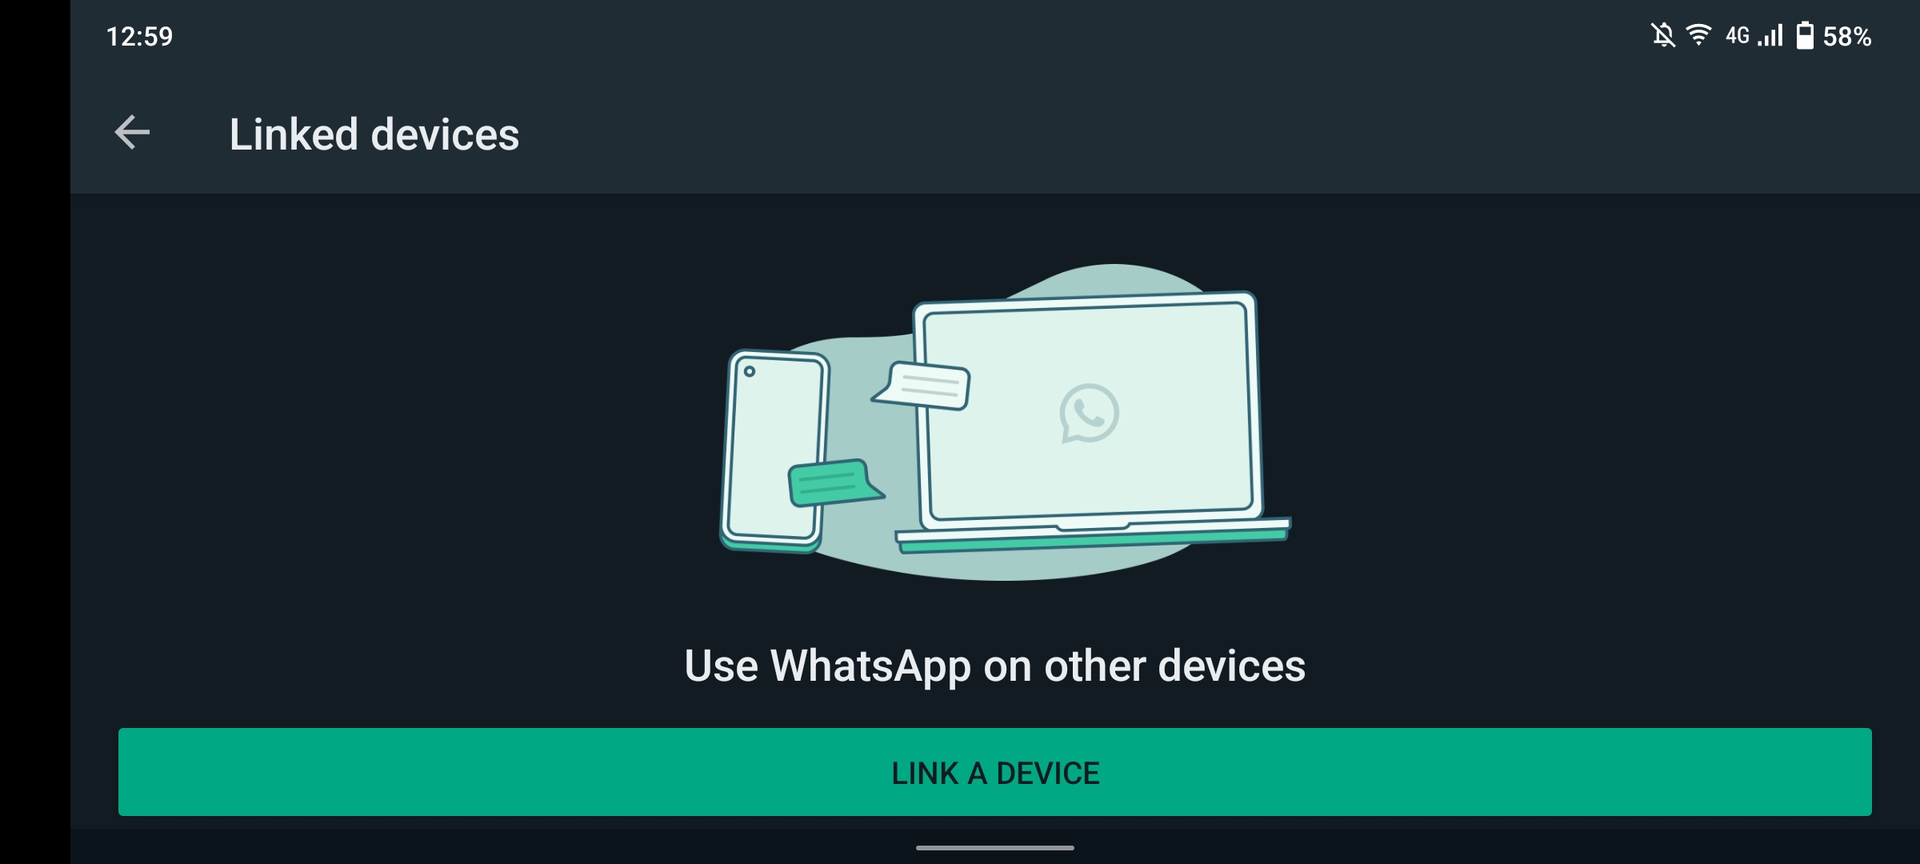 WhatsApp链接设备